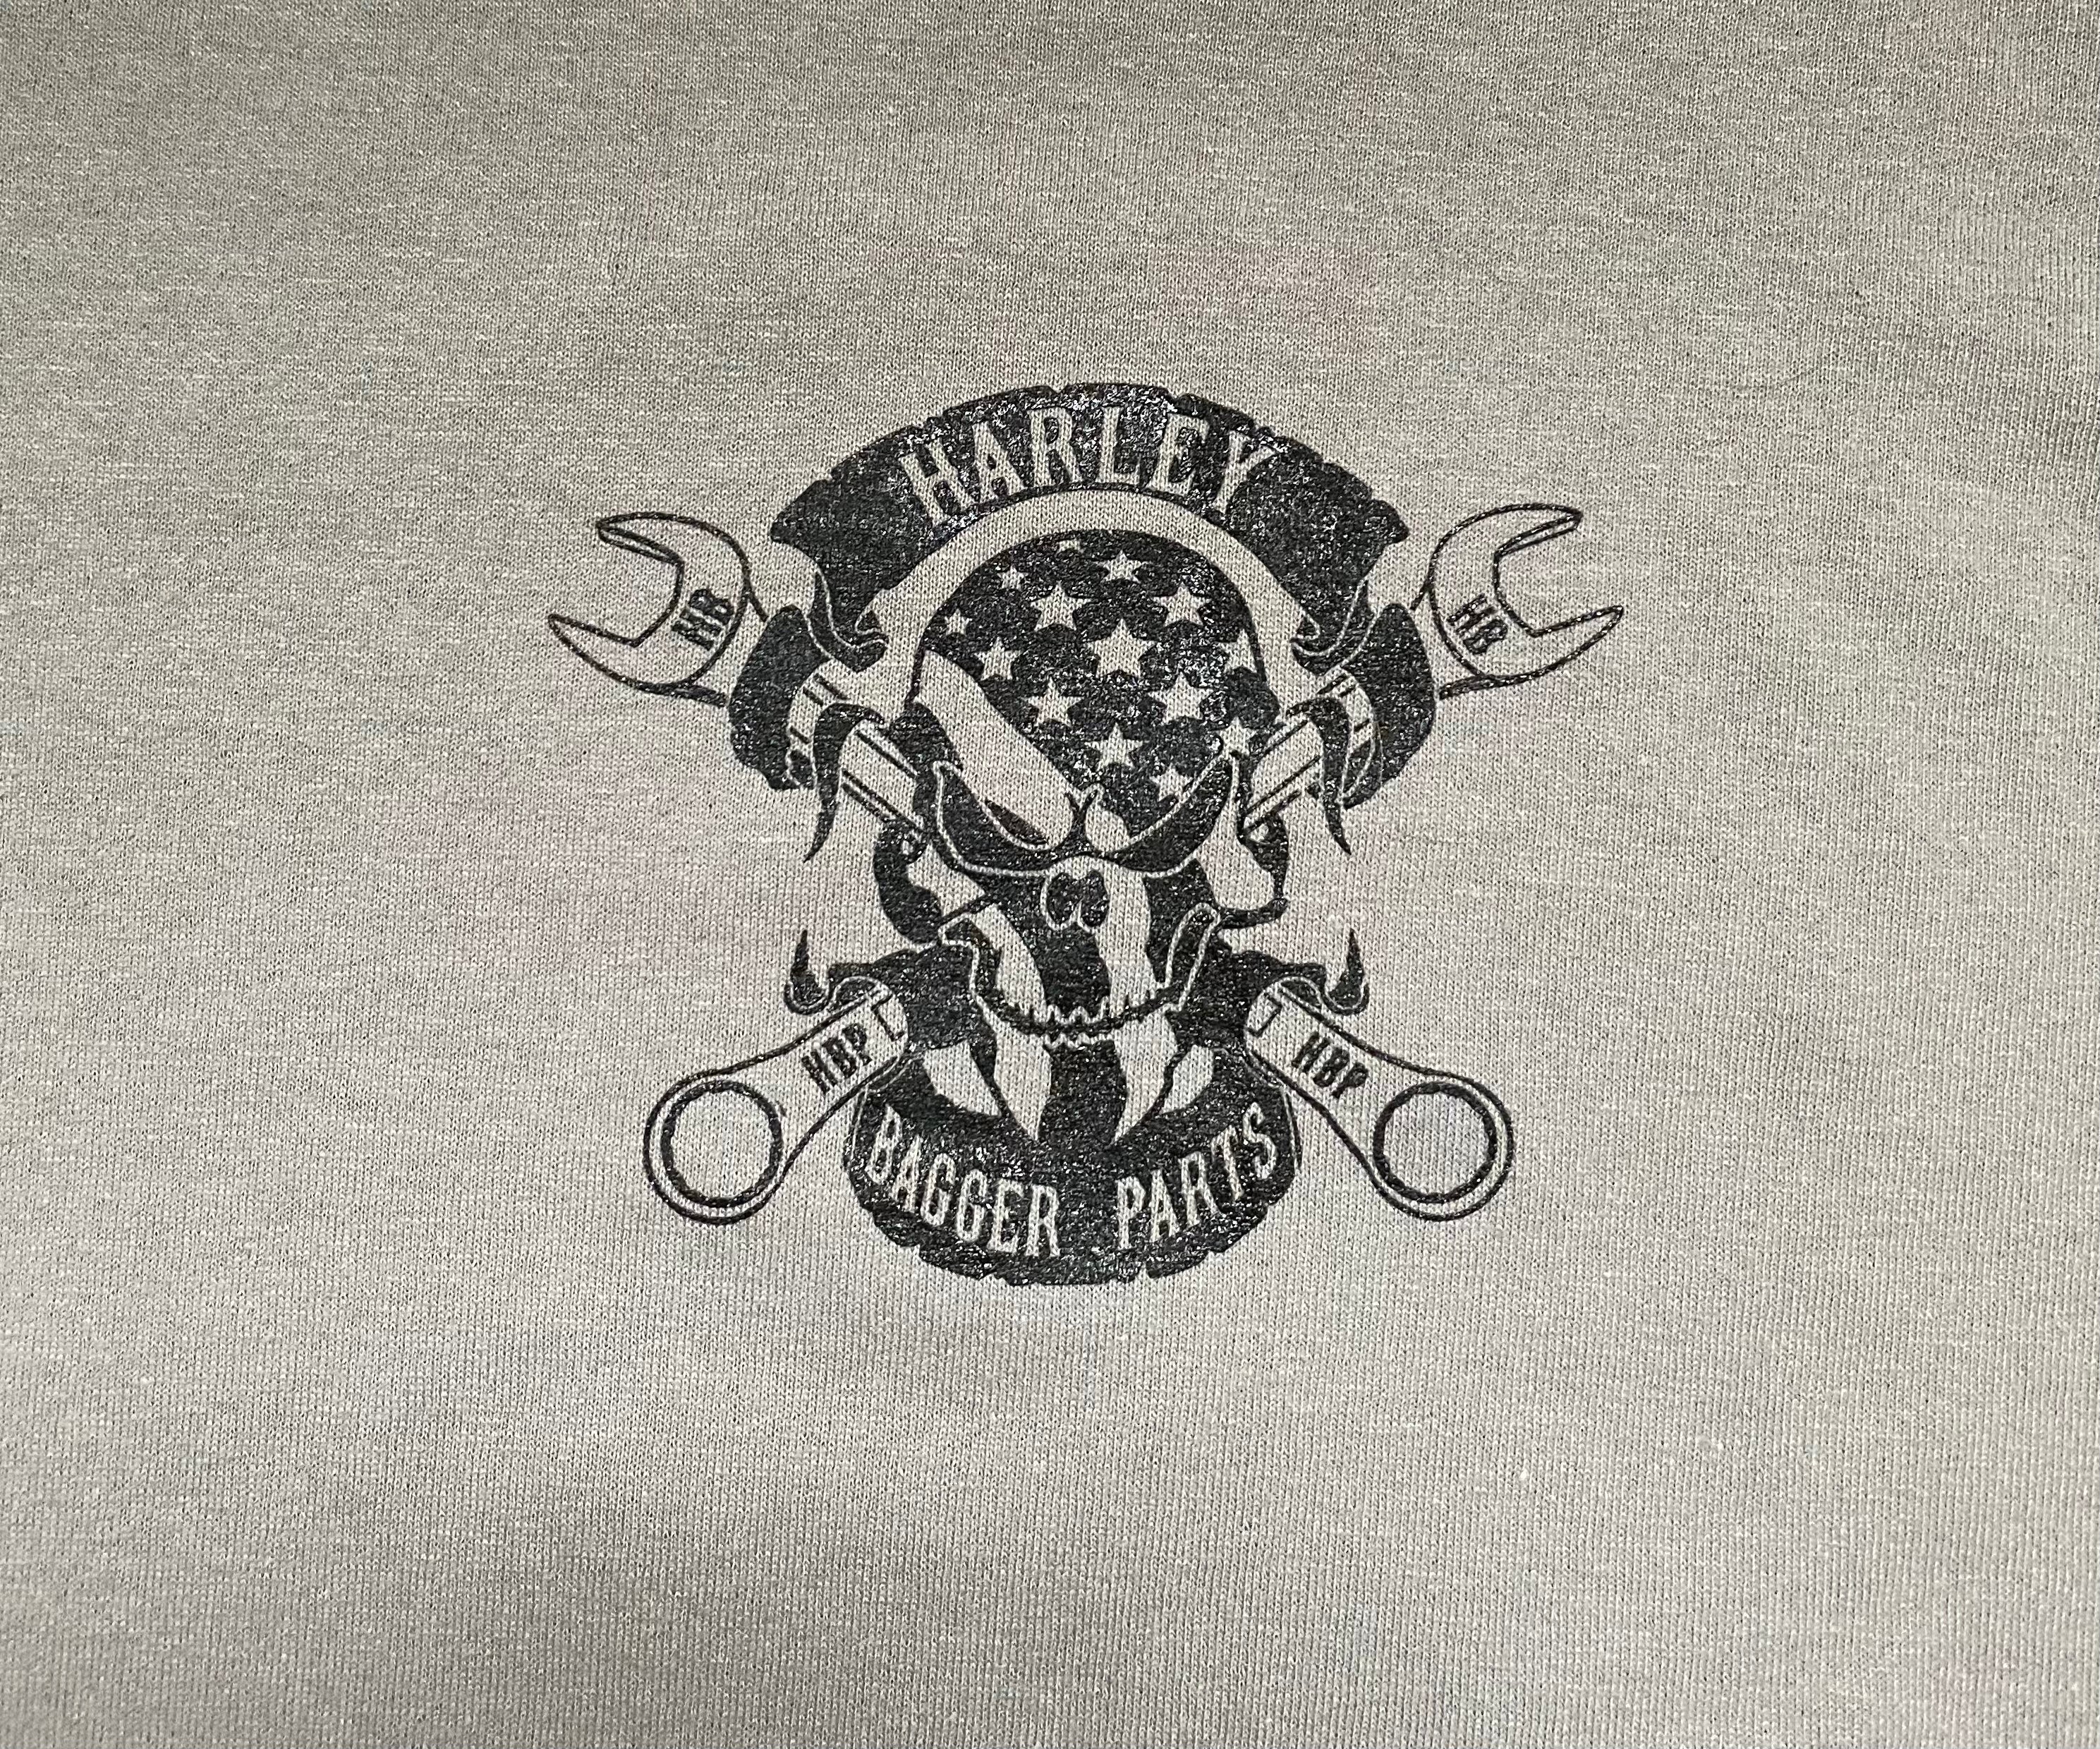 Harley Bagger Parts T-Shirt